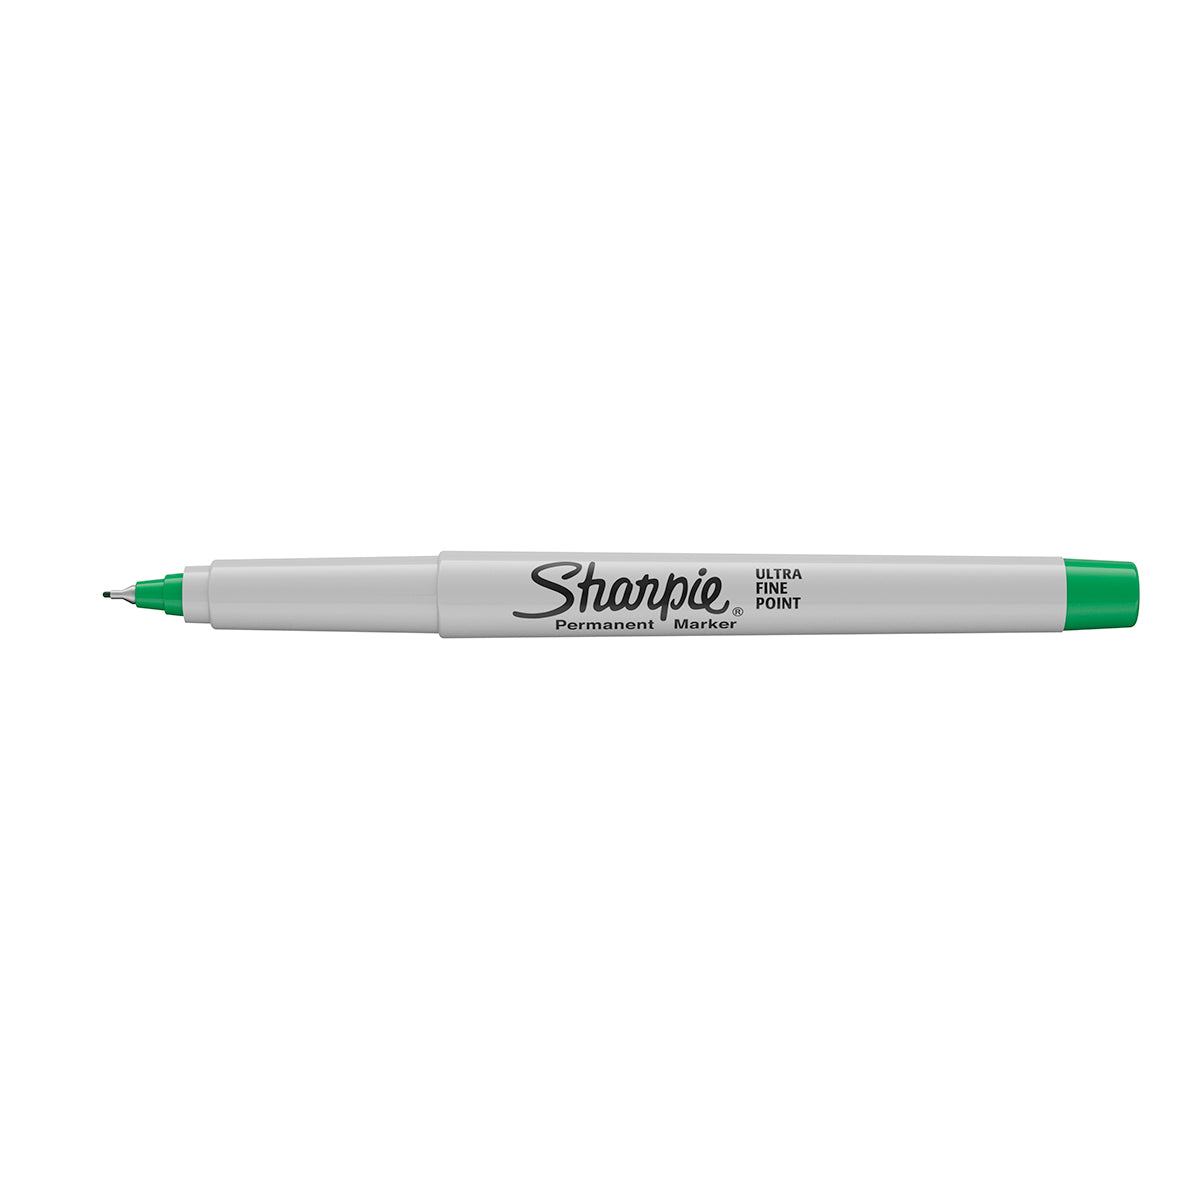 https://www.pensandpencils.net/cdn/shop/products/sharpie-ultra-fine-green-marker_fc5d0375-e5cf-43bf-b062-a7456716d14b.jpg?v=1574022862